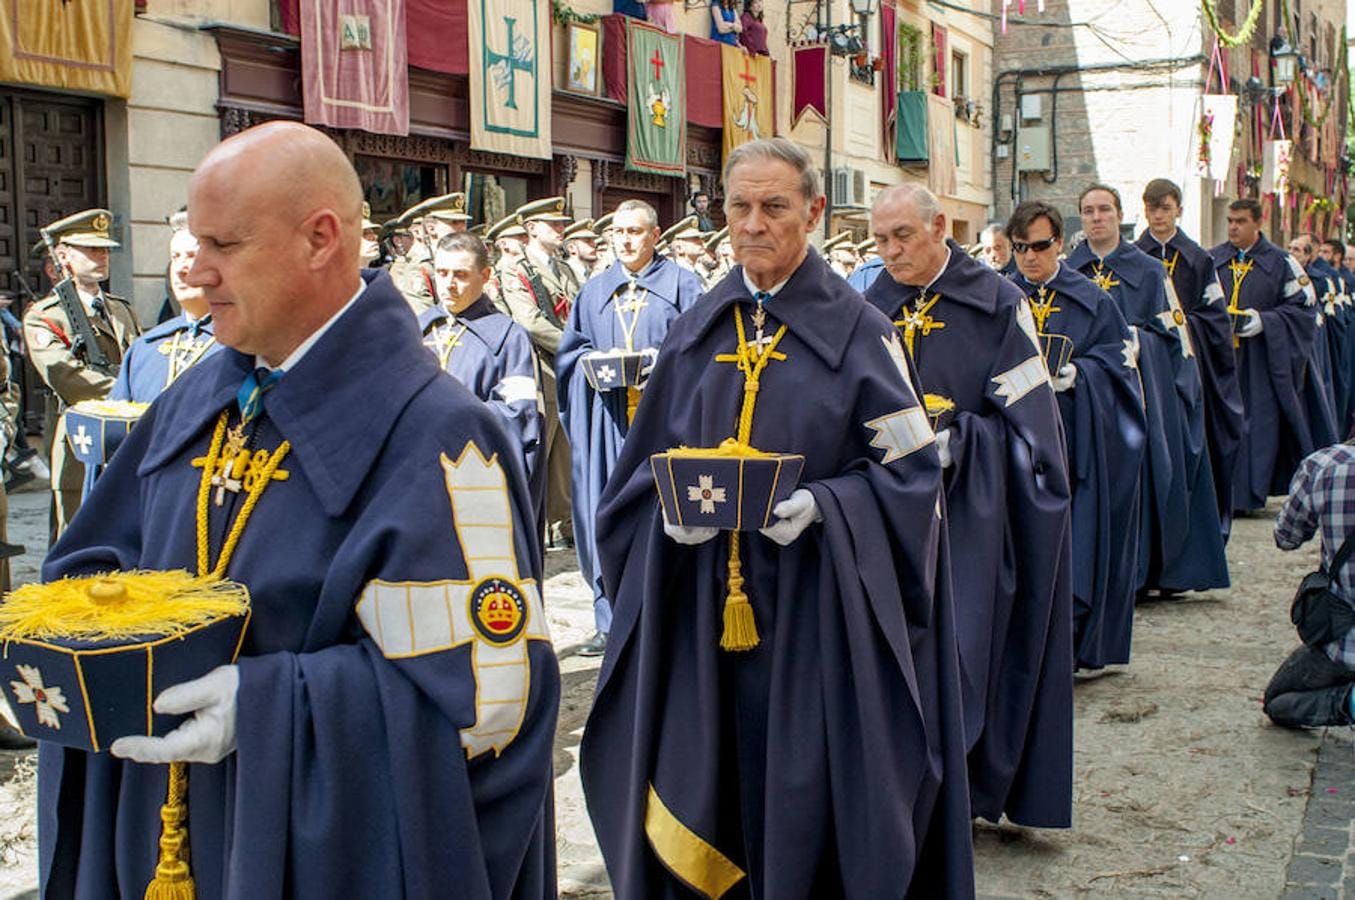 Un magno desfile en honor al Santísimo